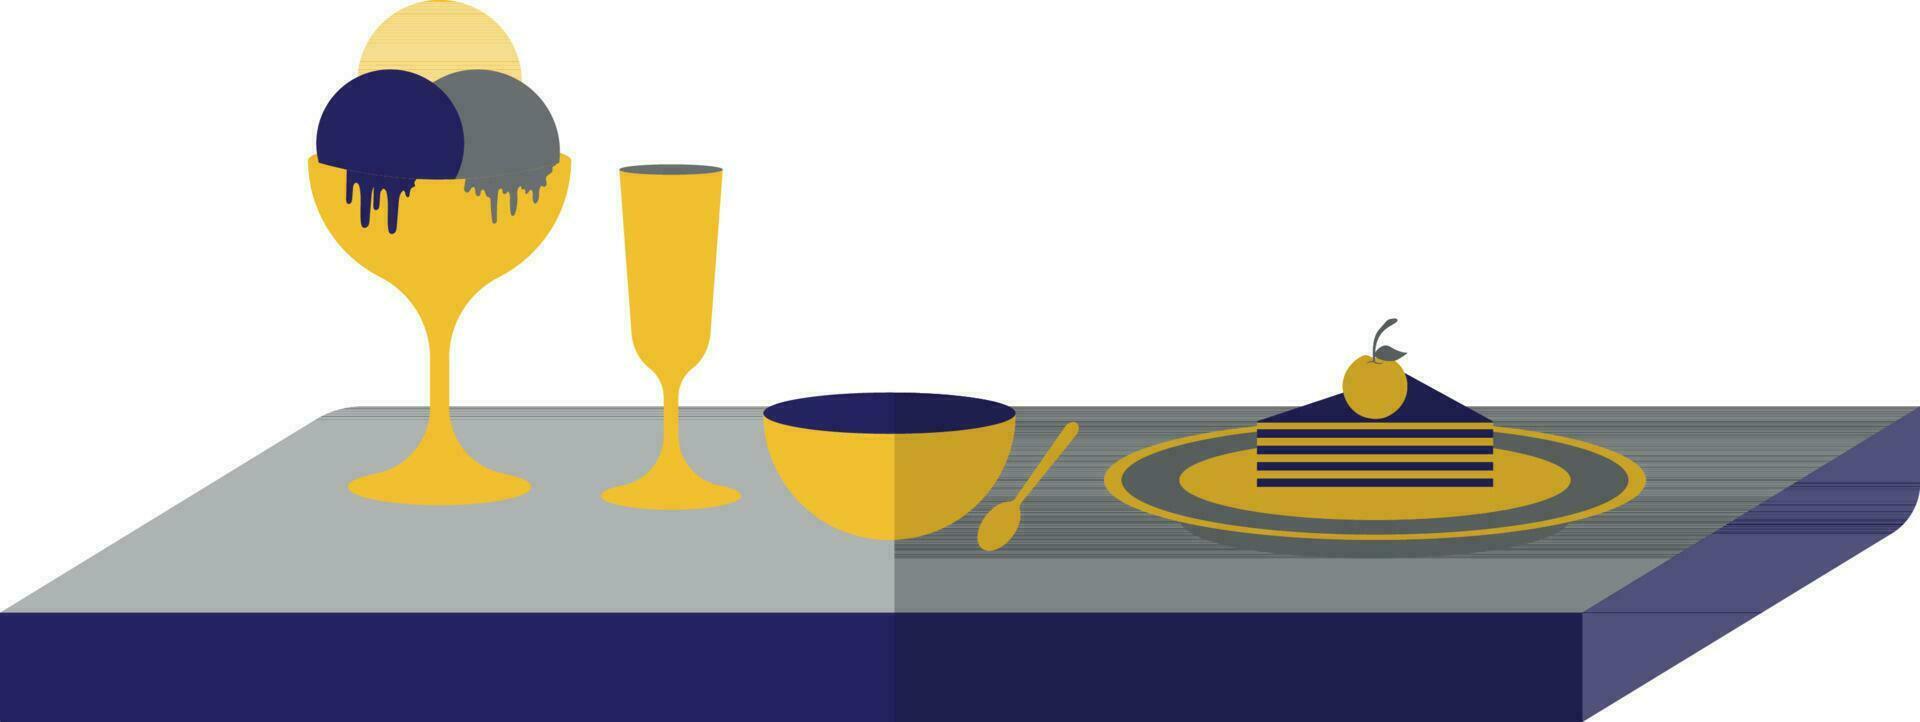 Schüssel, Löffel, Cocktail und Eis Sahne Glas dekoriert auf Tisch. vektor